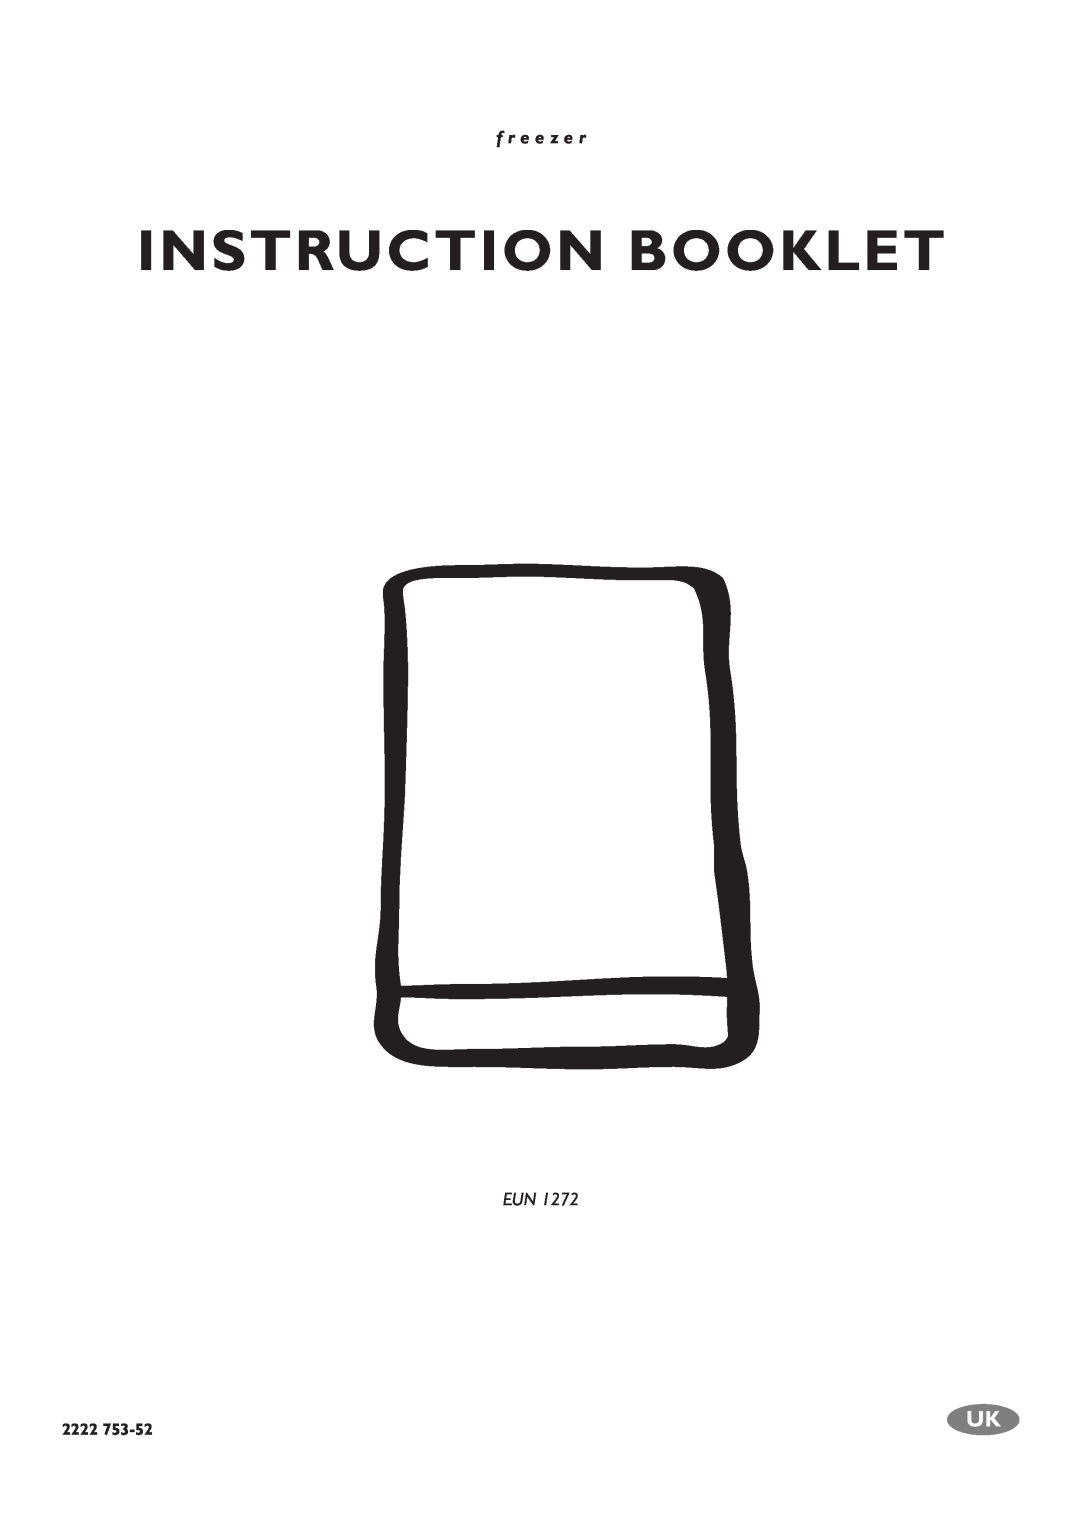 Electrolux EUN 1272 manual Instruction Booklet, f r e e z e r, 2222 